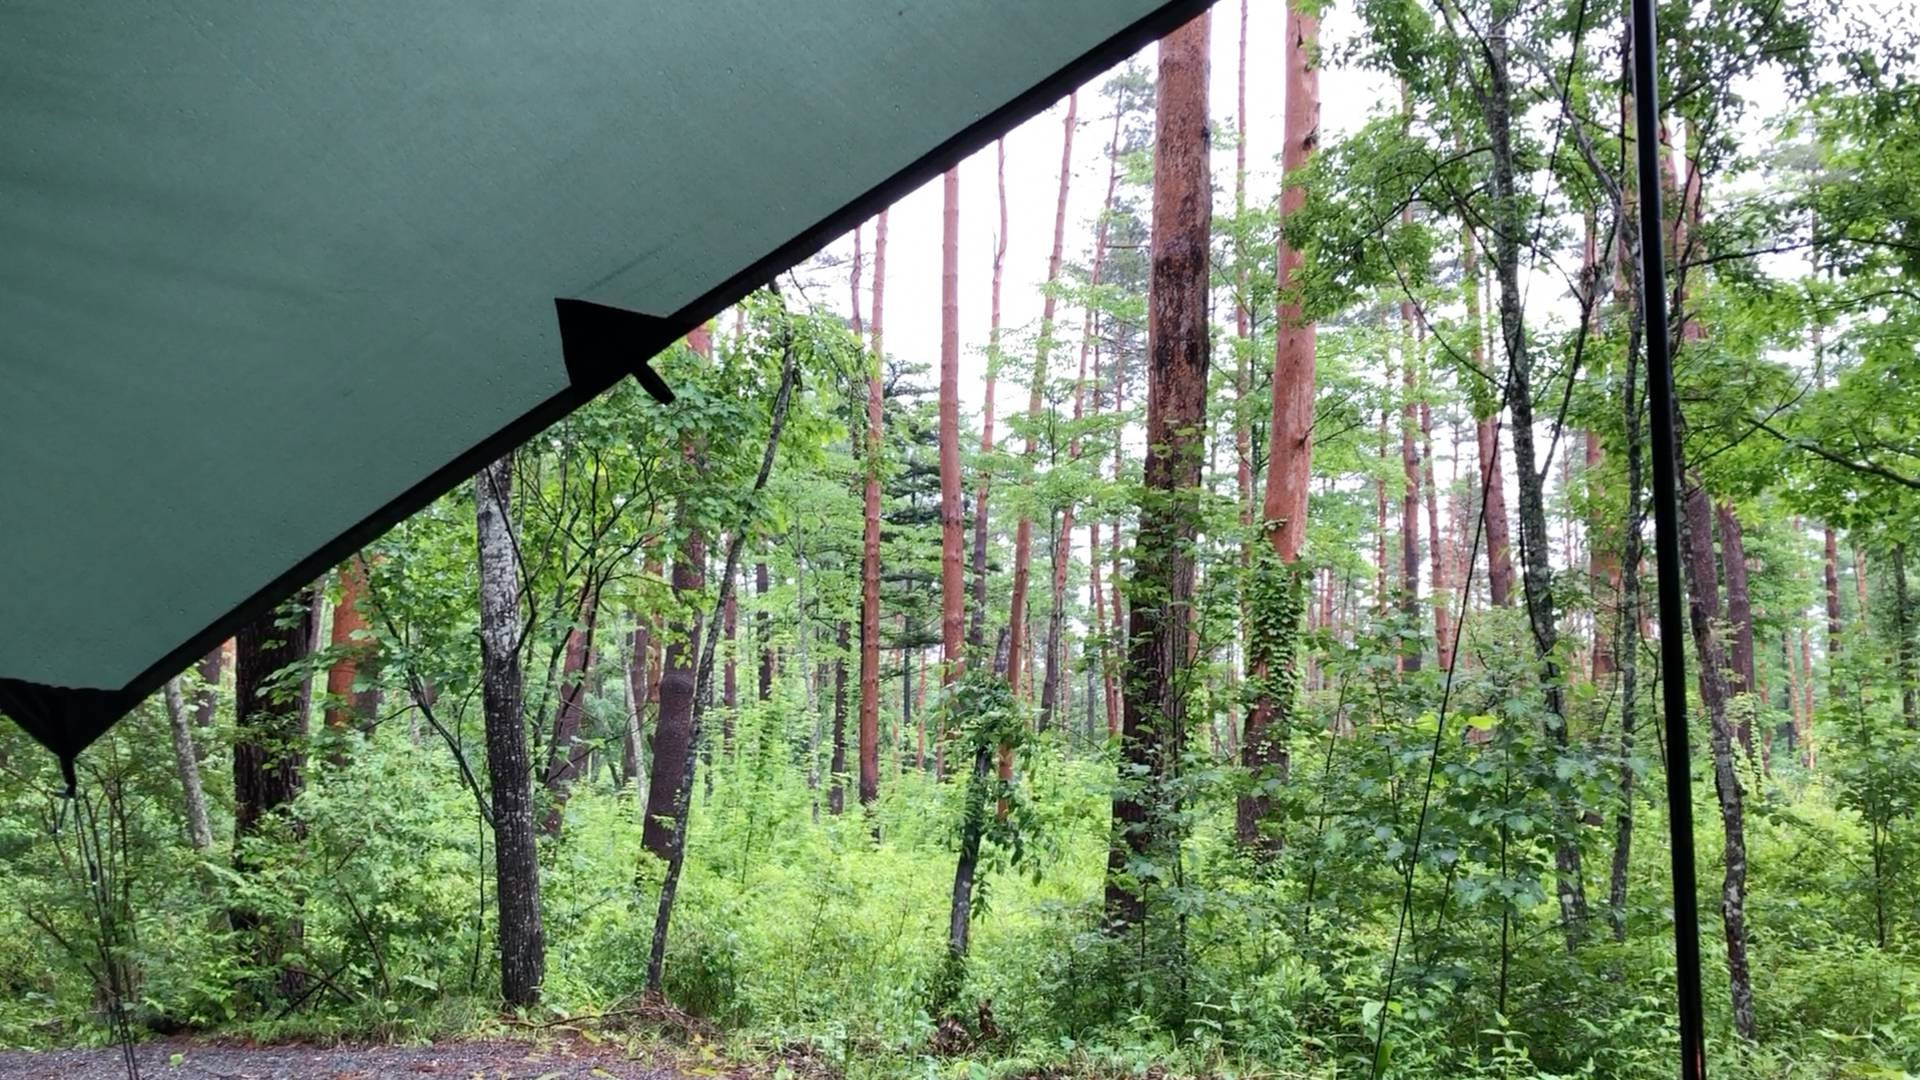 【軽バンキャンプ9-2】雨で空いてた&GREEN(アンドグリーン)キャンプ場で車中泊キャンプ(後編)